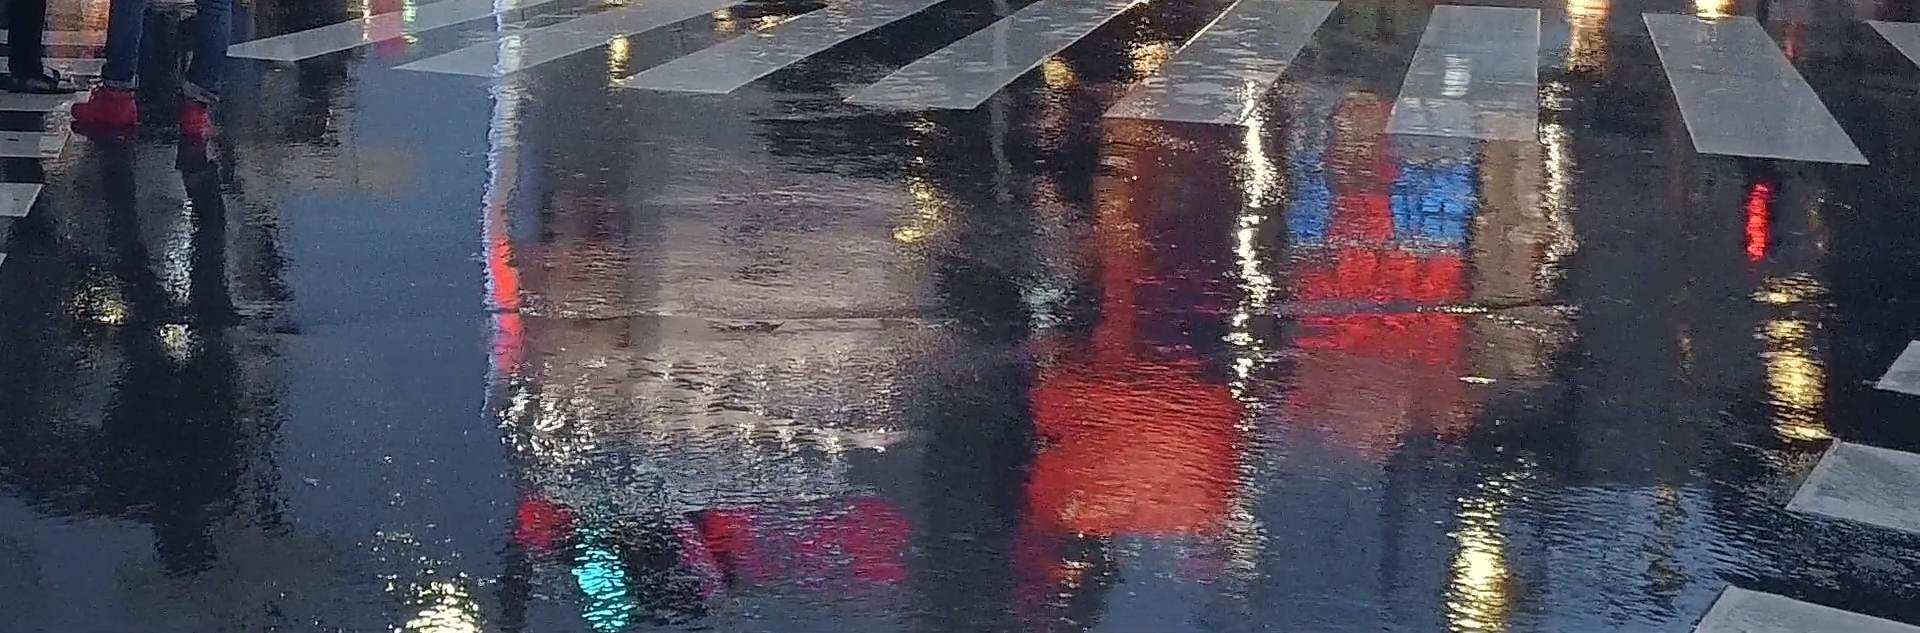 Кадр из ролика TOKYO MOOD, отражение в лужах на асфальте